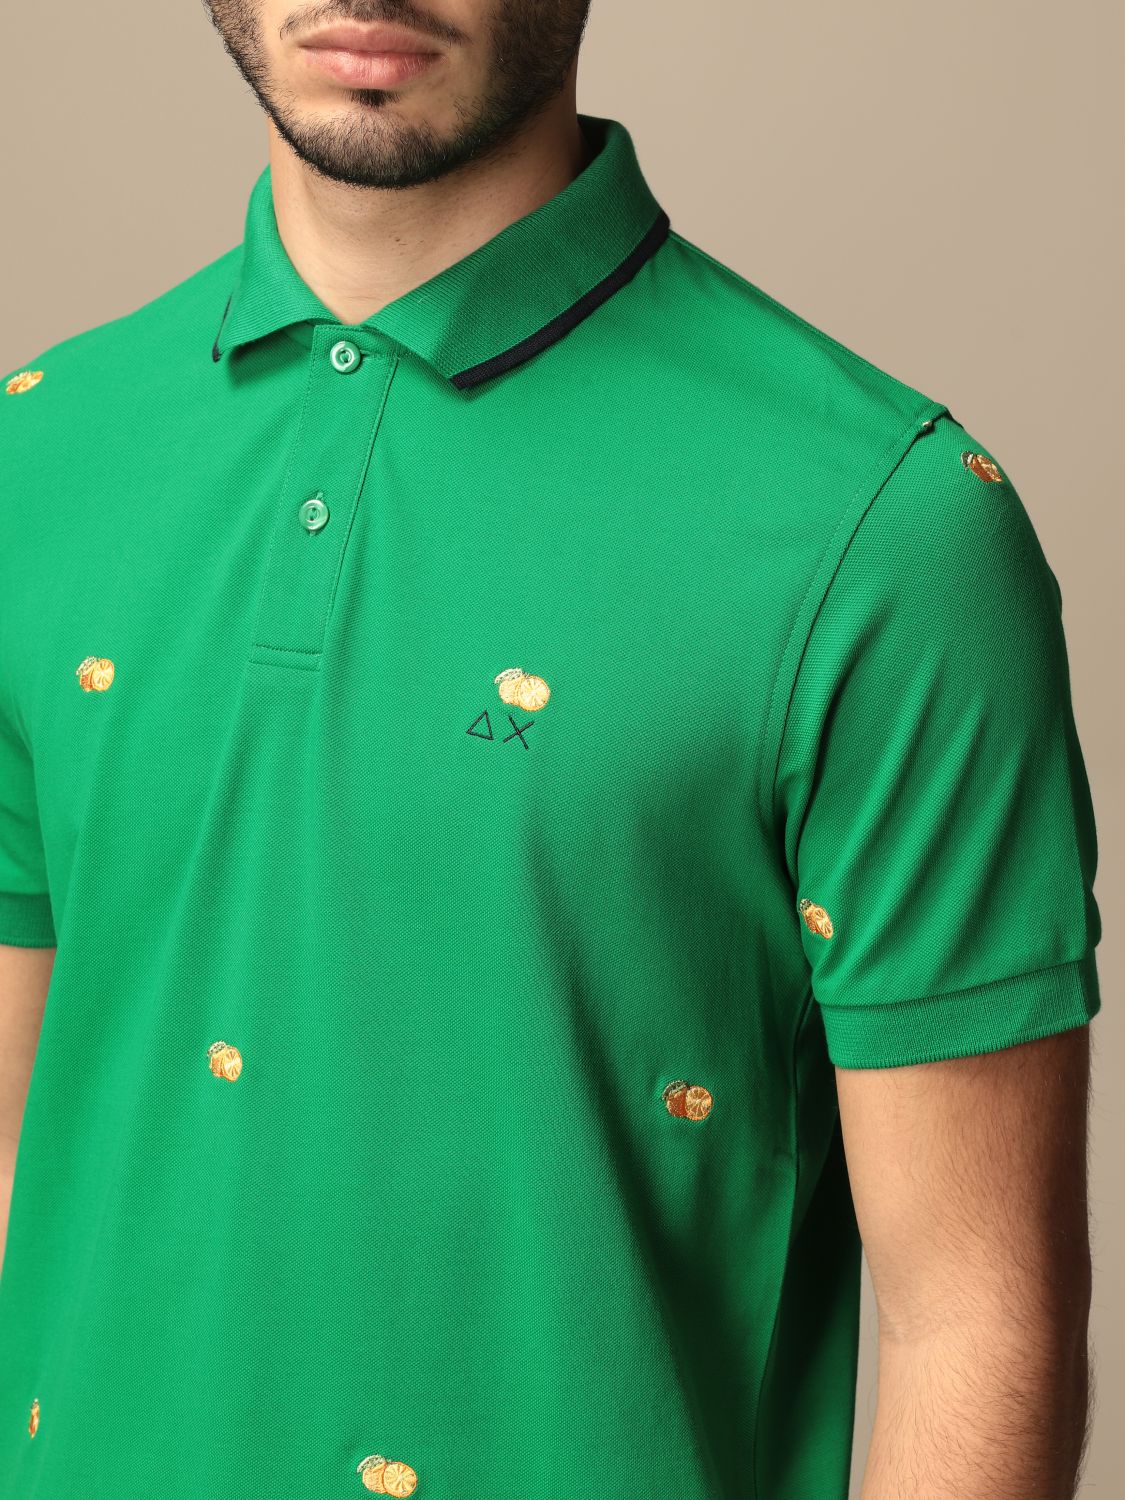 Polo shirt Sun 68: Sweater men Sun 68 grass green 3